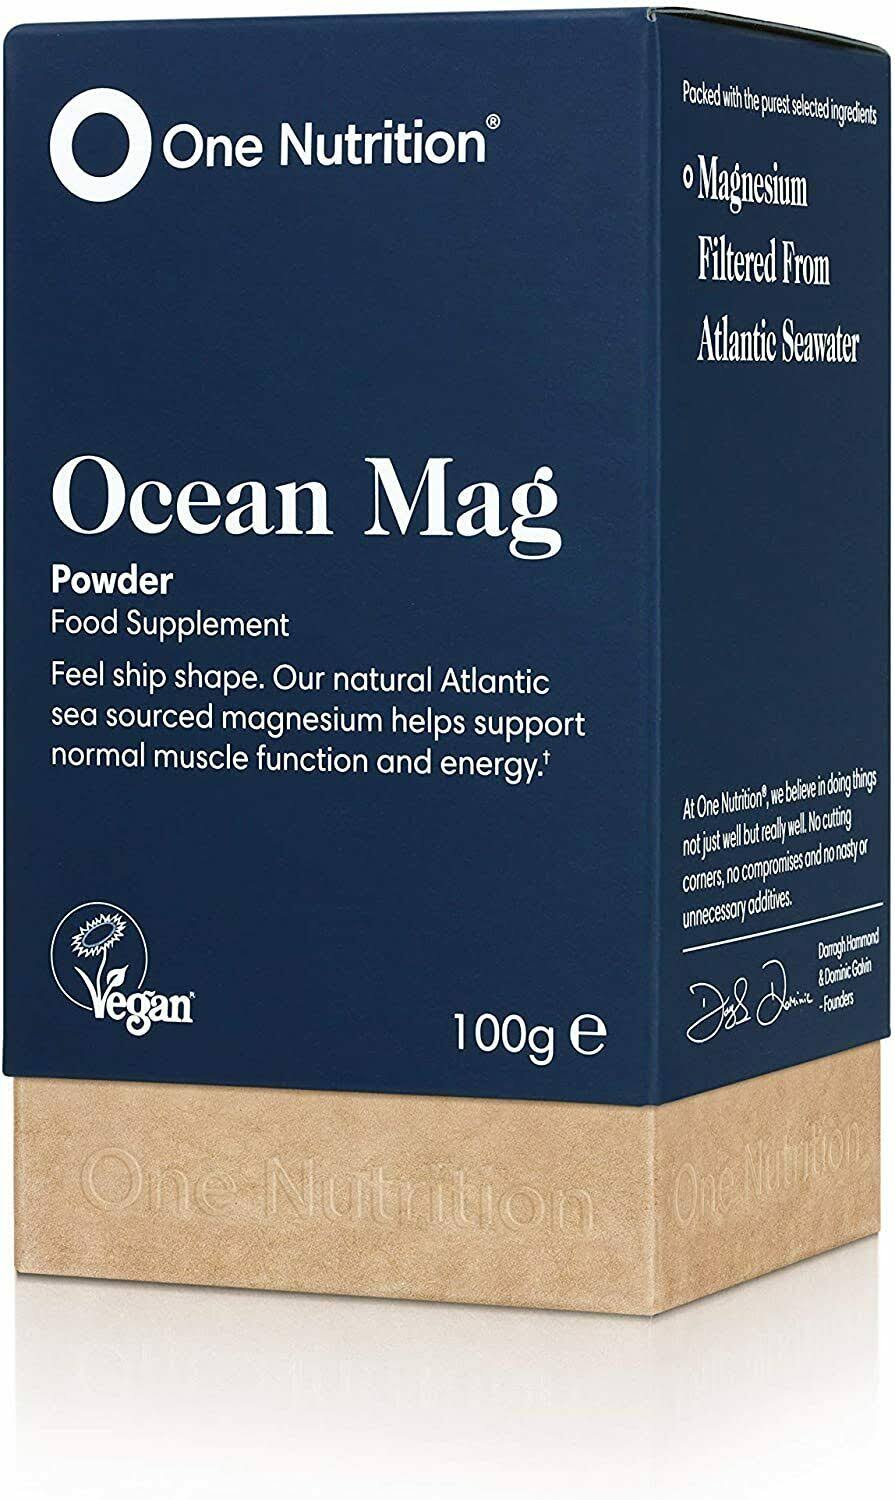 One Nutrition Ocean Mag 100g Powder